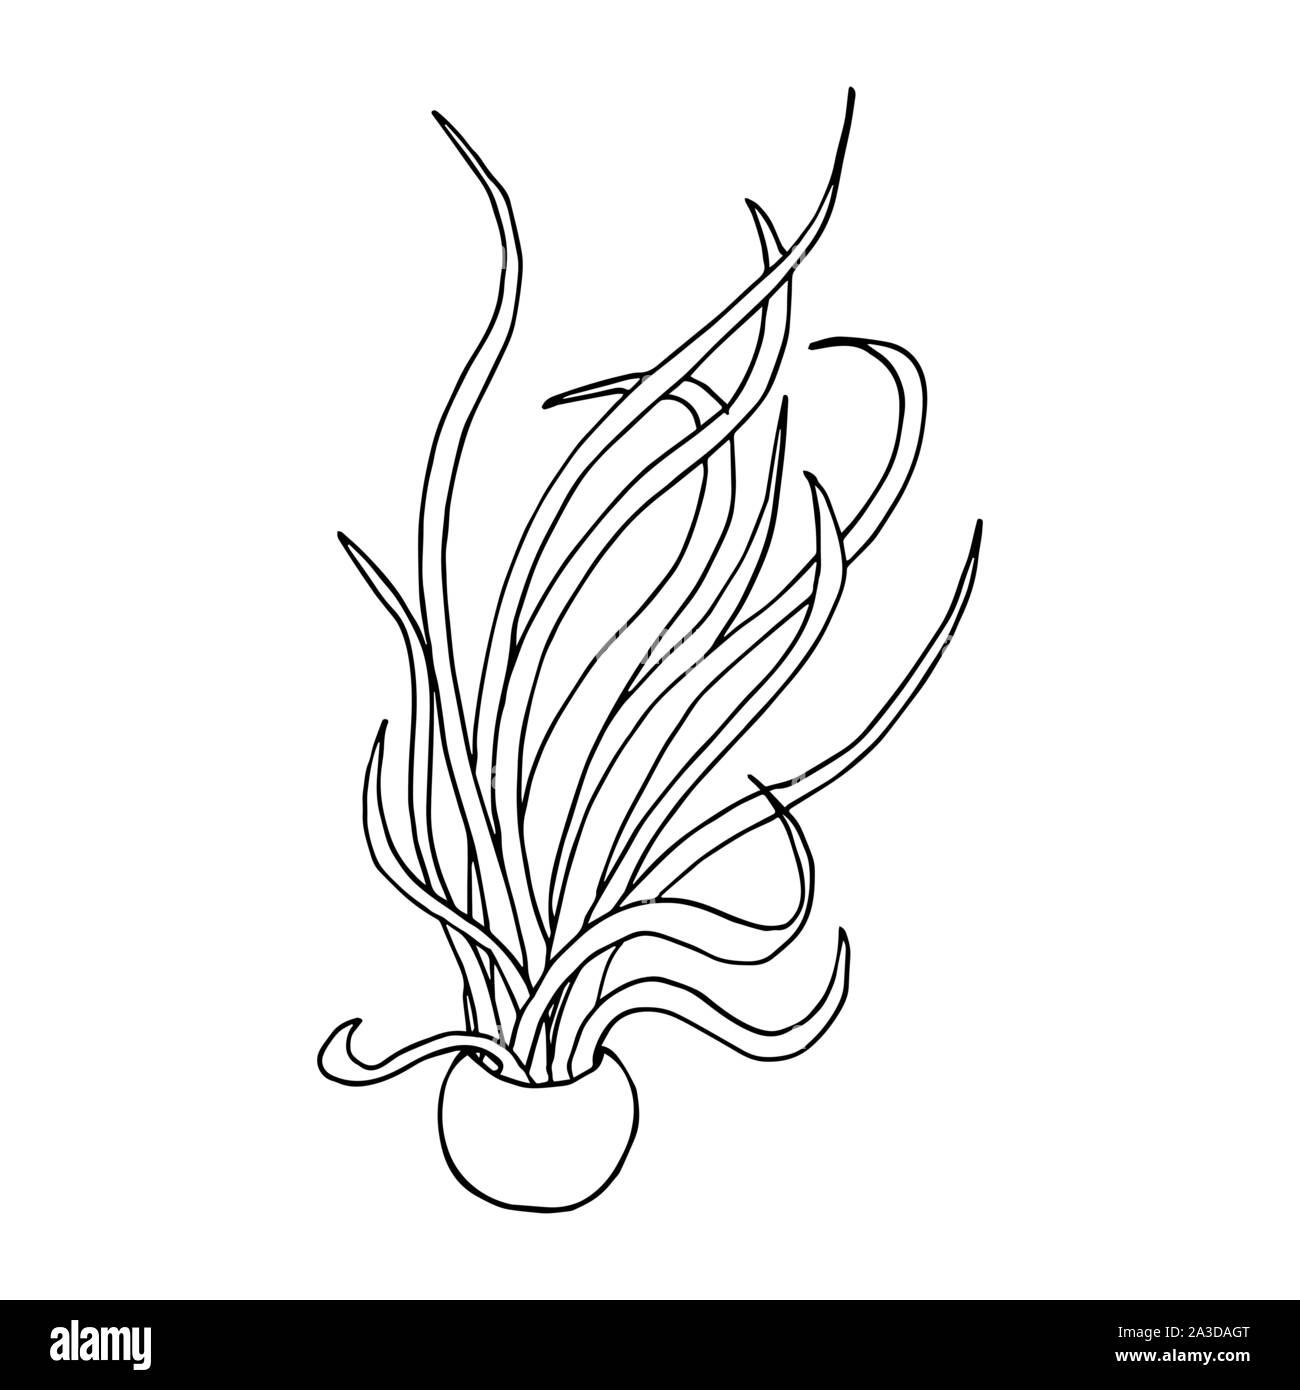 Caput Medusae Pflanze in einem Topf. Line Art doodle Skizze. Schwarzer Umriss auf weißem Hintergrund. Bild kann in Grußkarten, Poster, Flyer, Banner, Logo, botanische Design etc. Vector Illustration verwendet werden. EPS 10. Stock Vektor